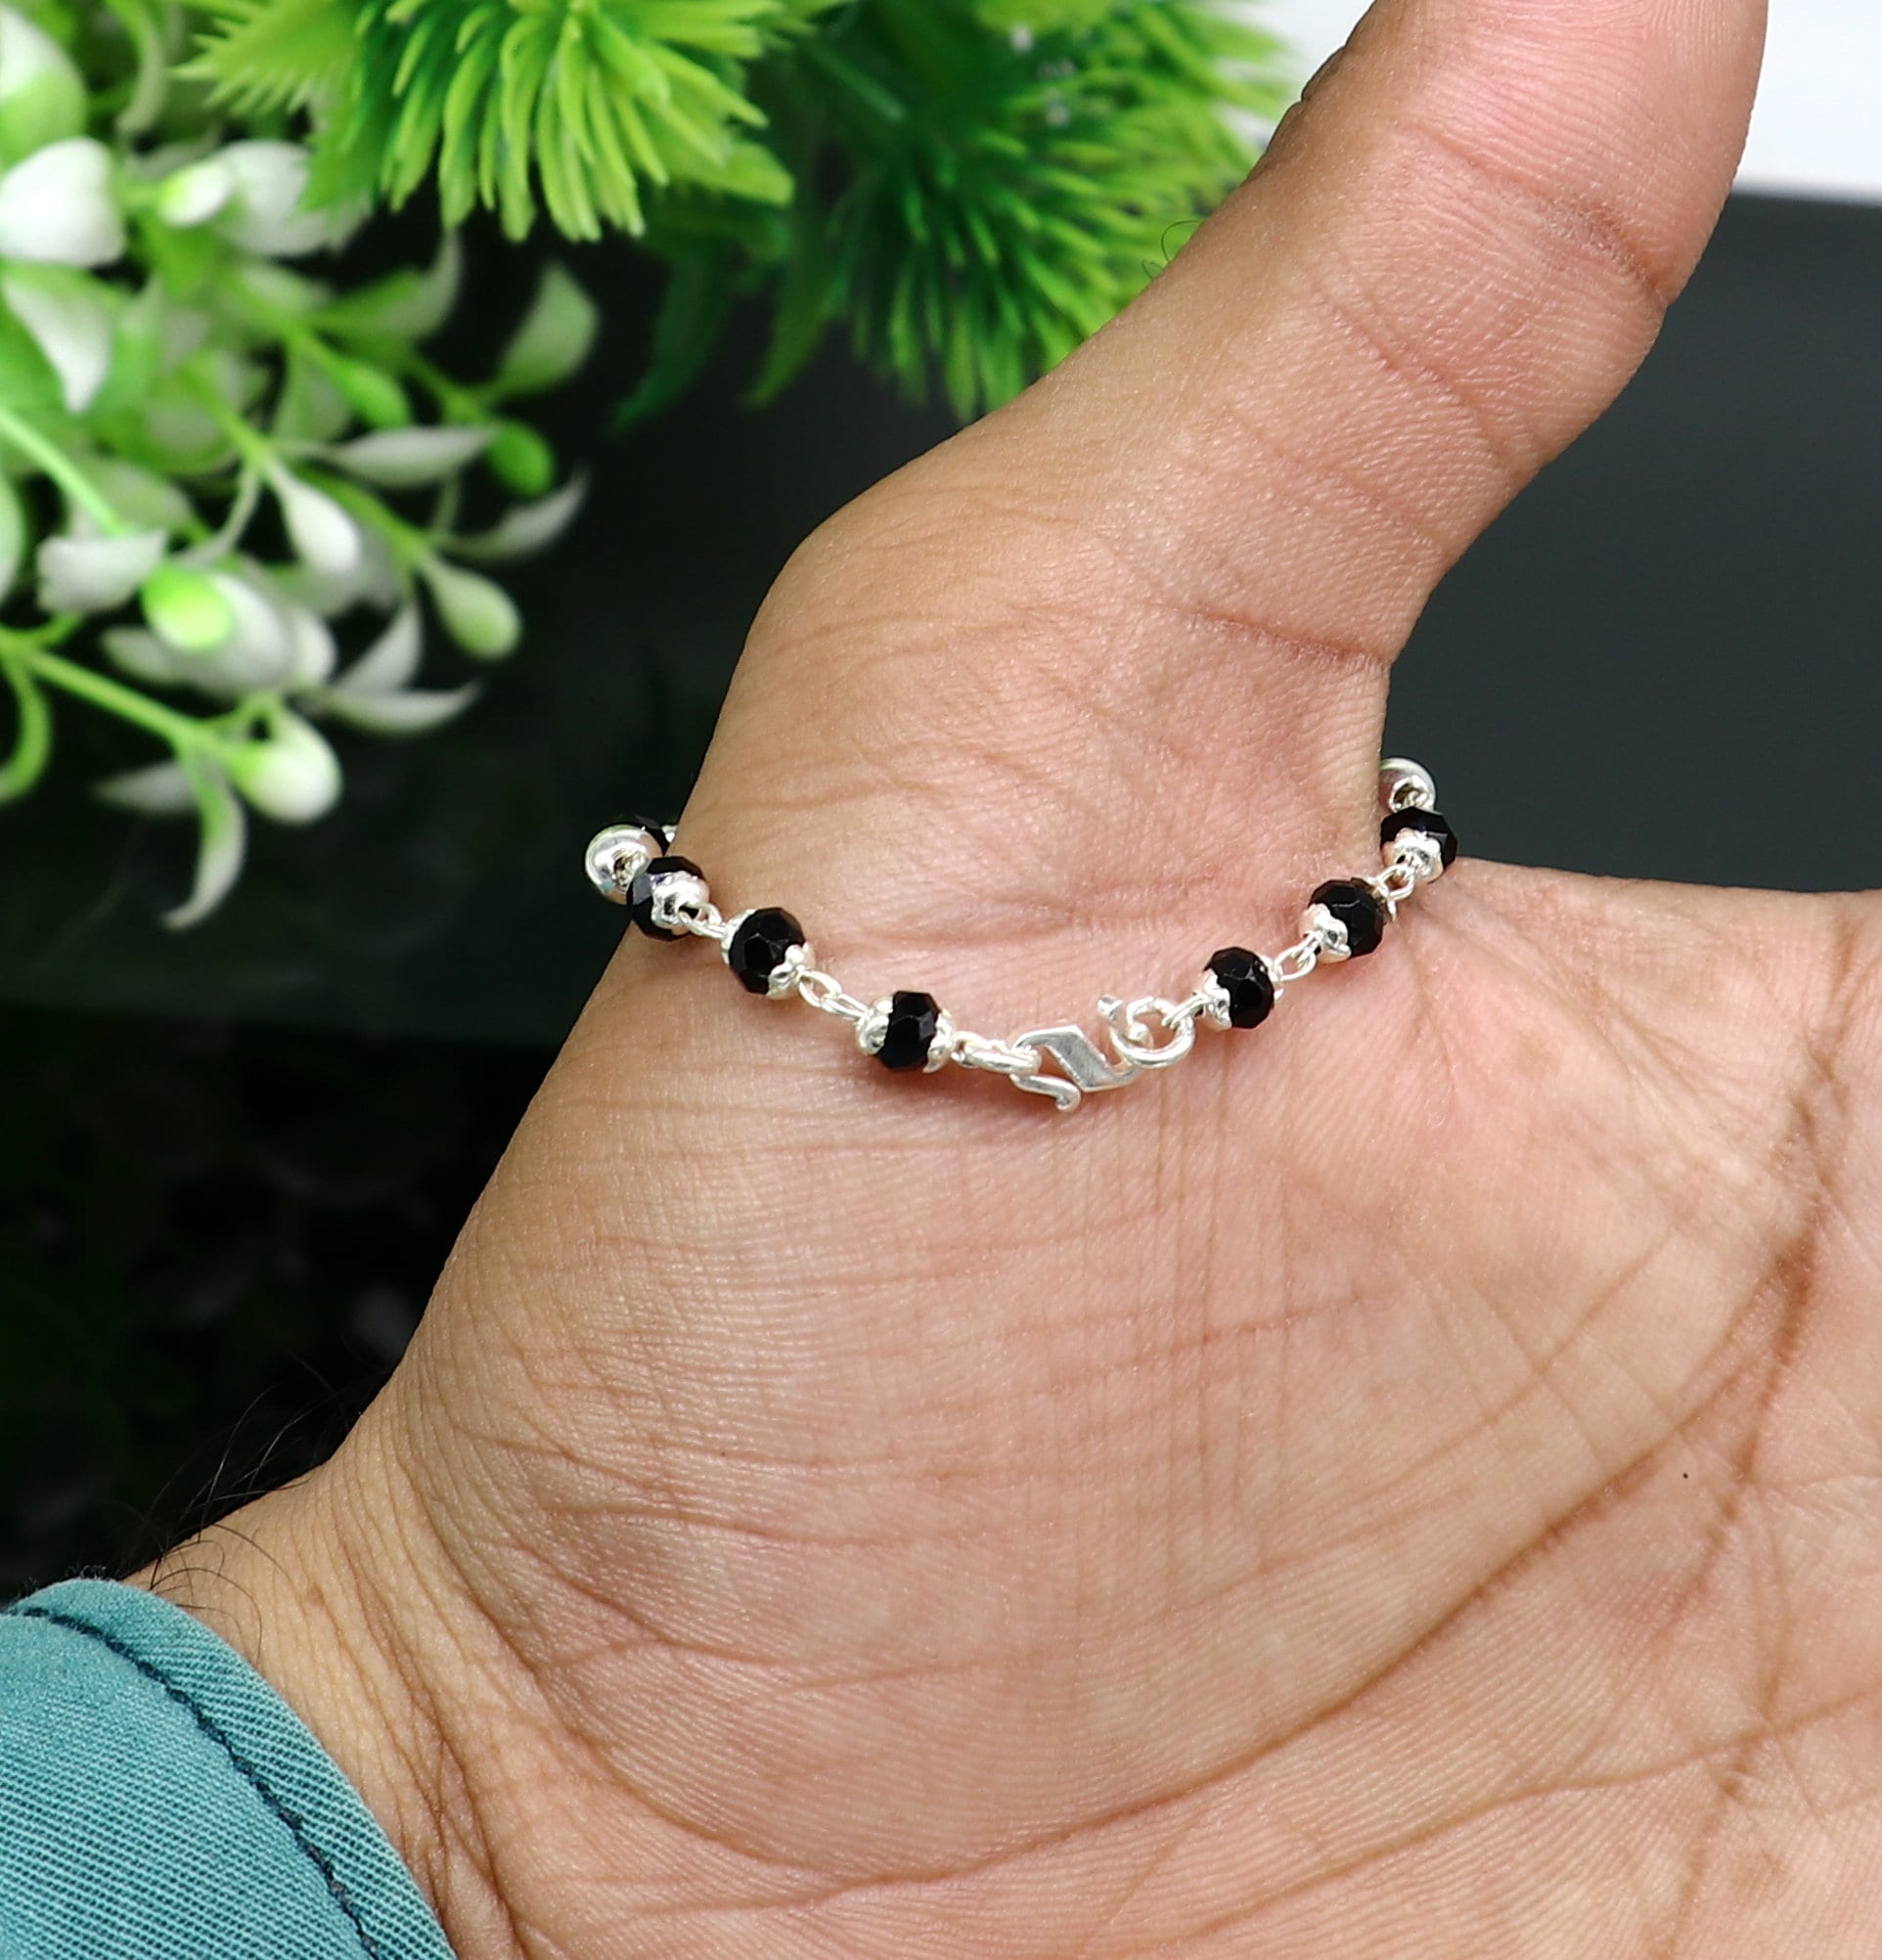 Adjustable Black Beads 92.5 Sterling Silver Bracelet Or Anklet